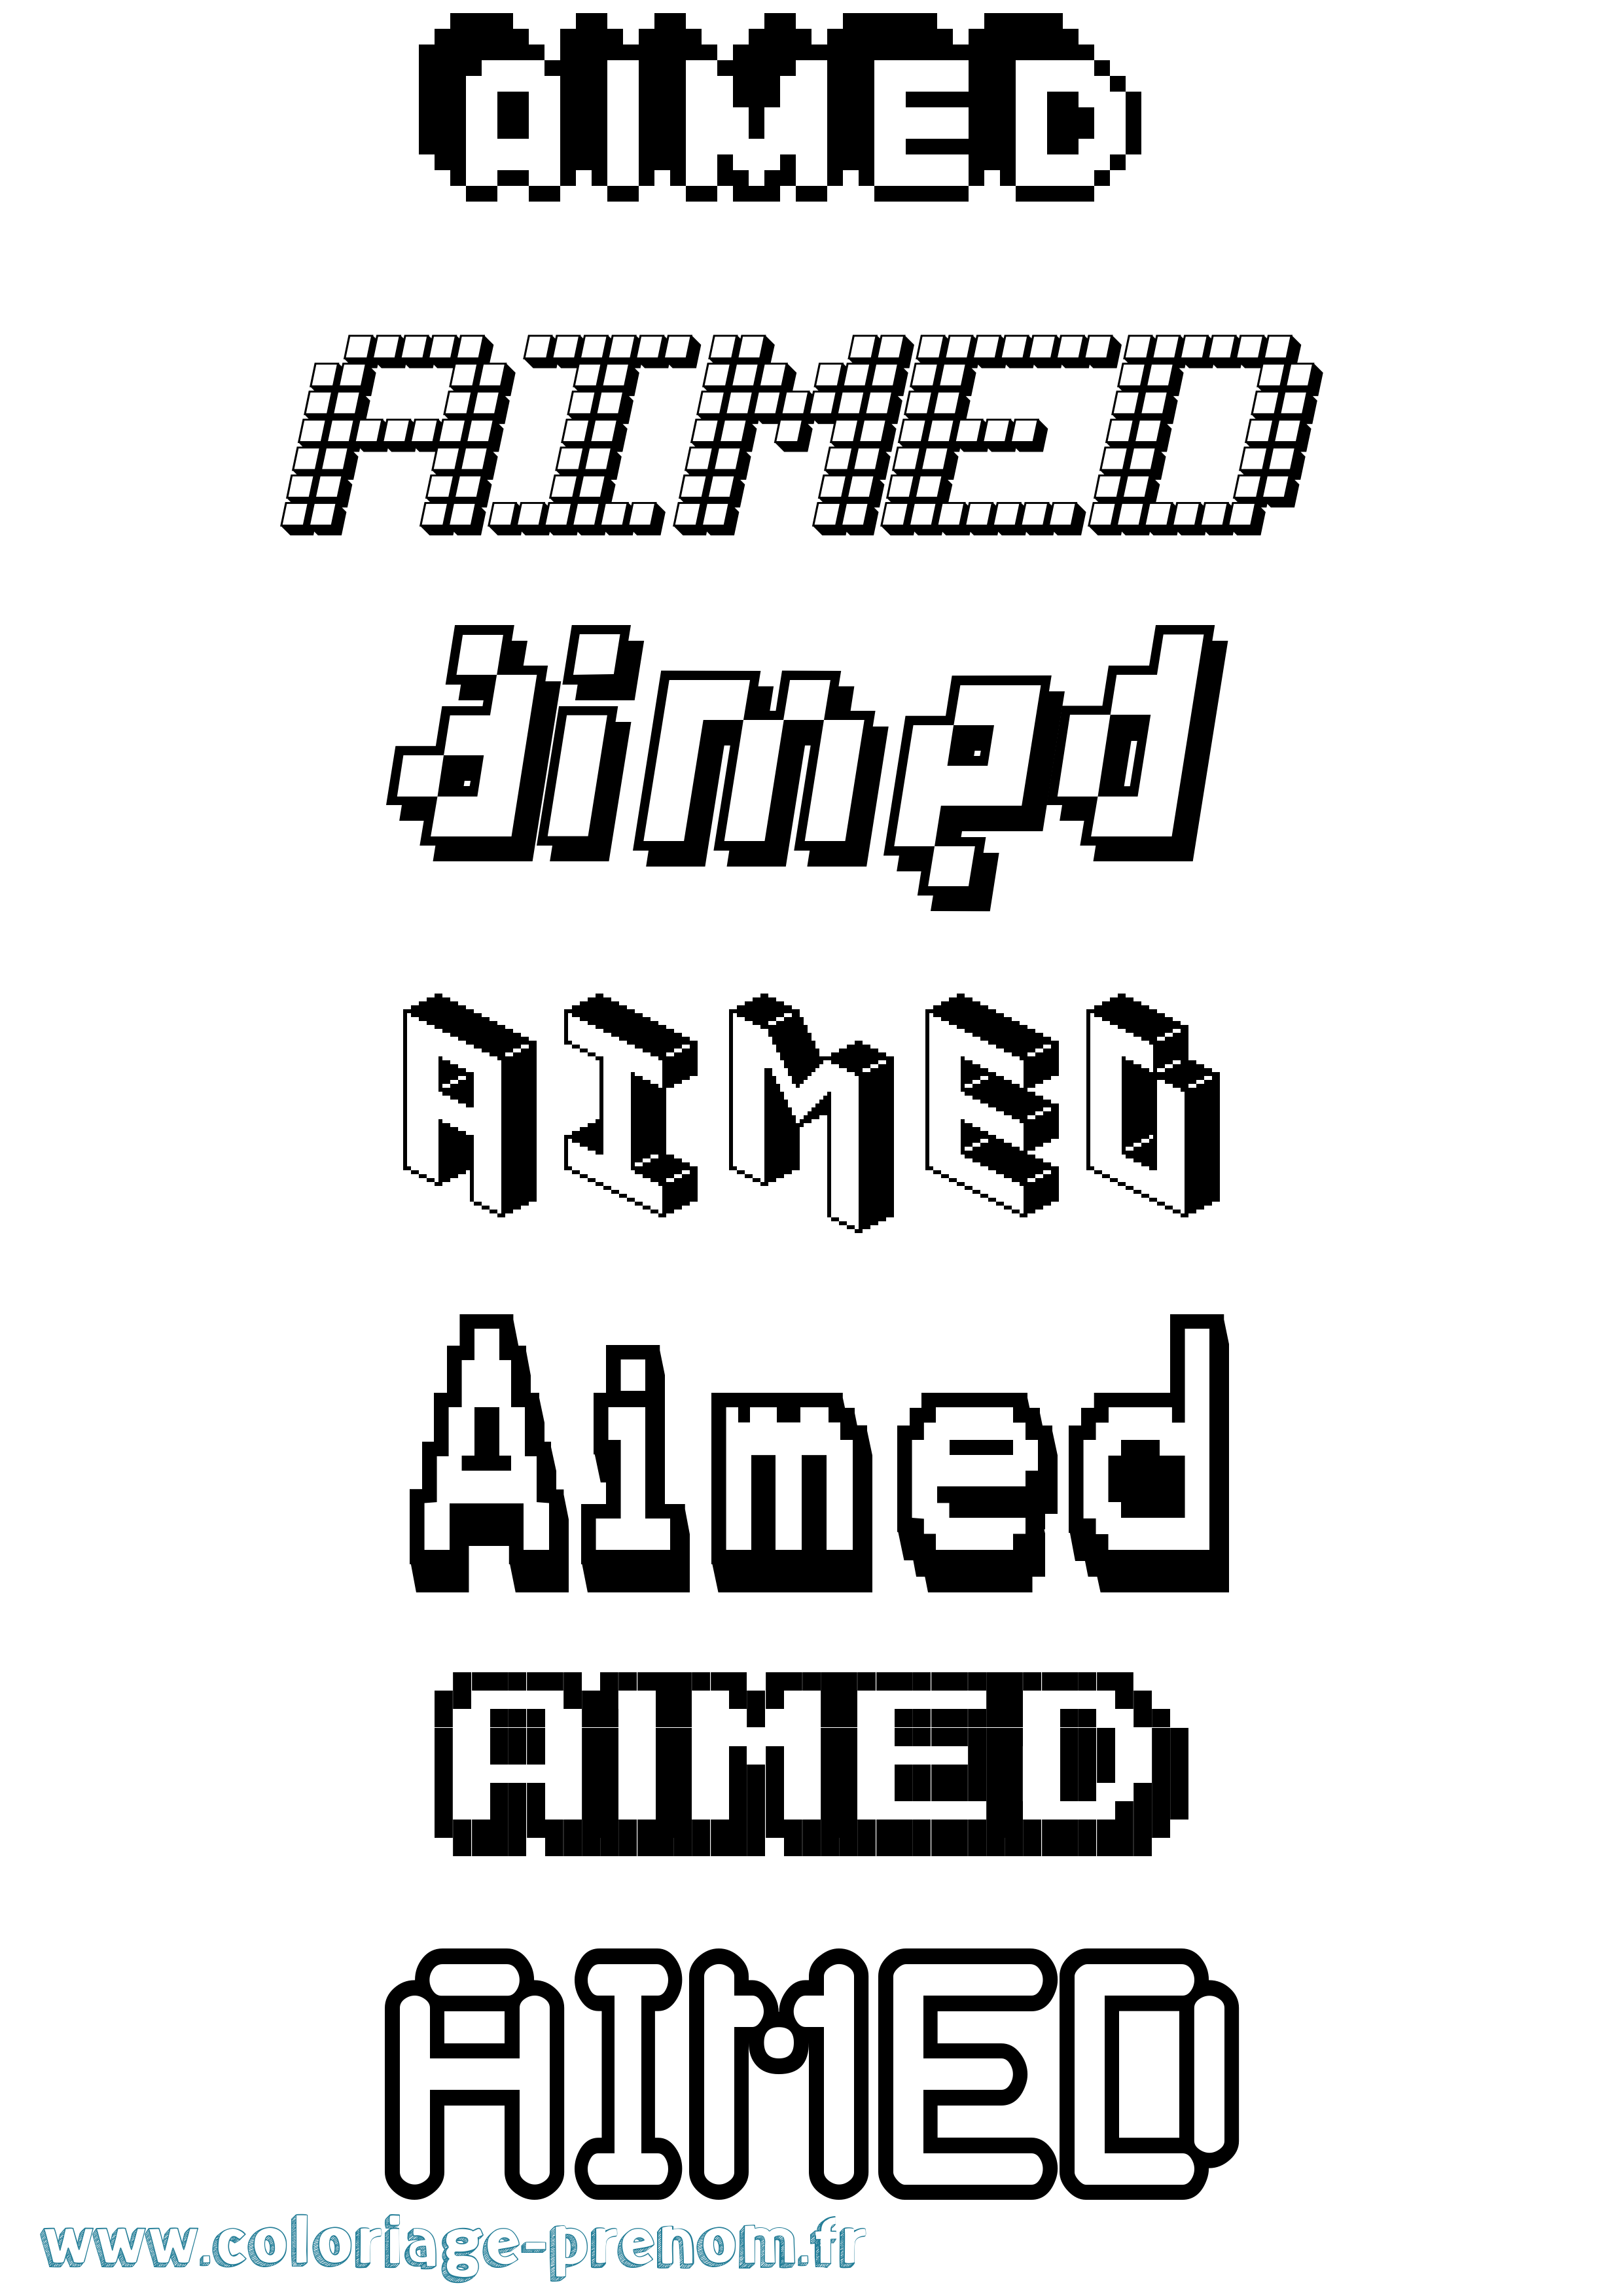 Coloriage prénom Aimed Pixel